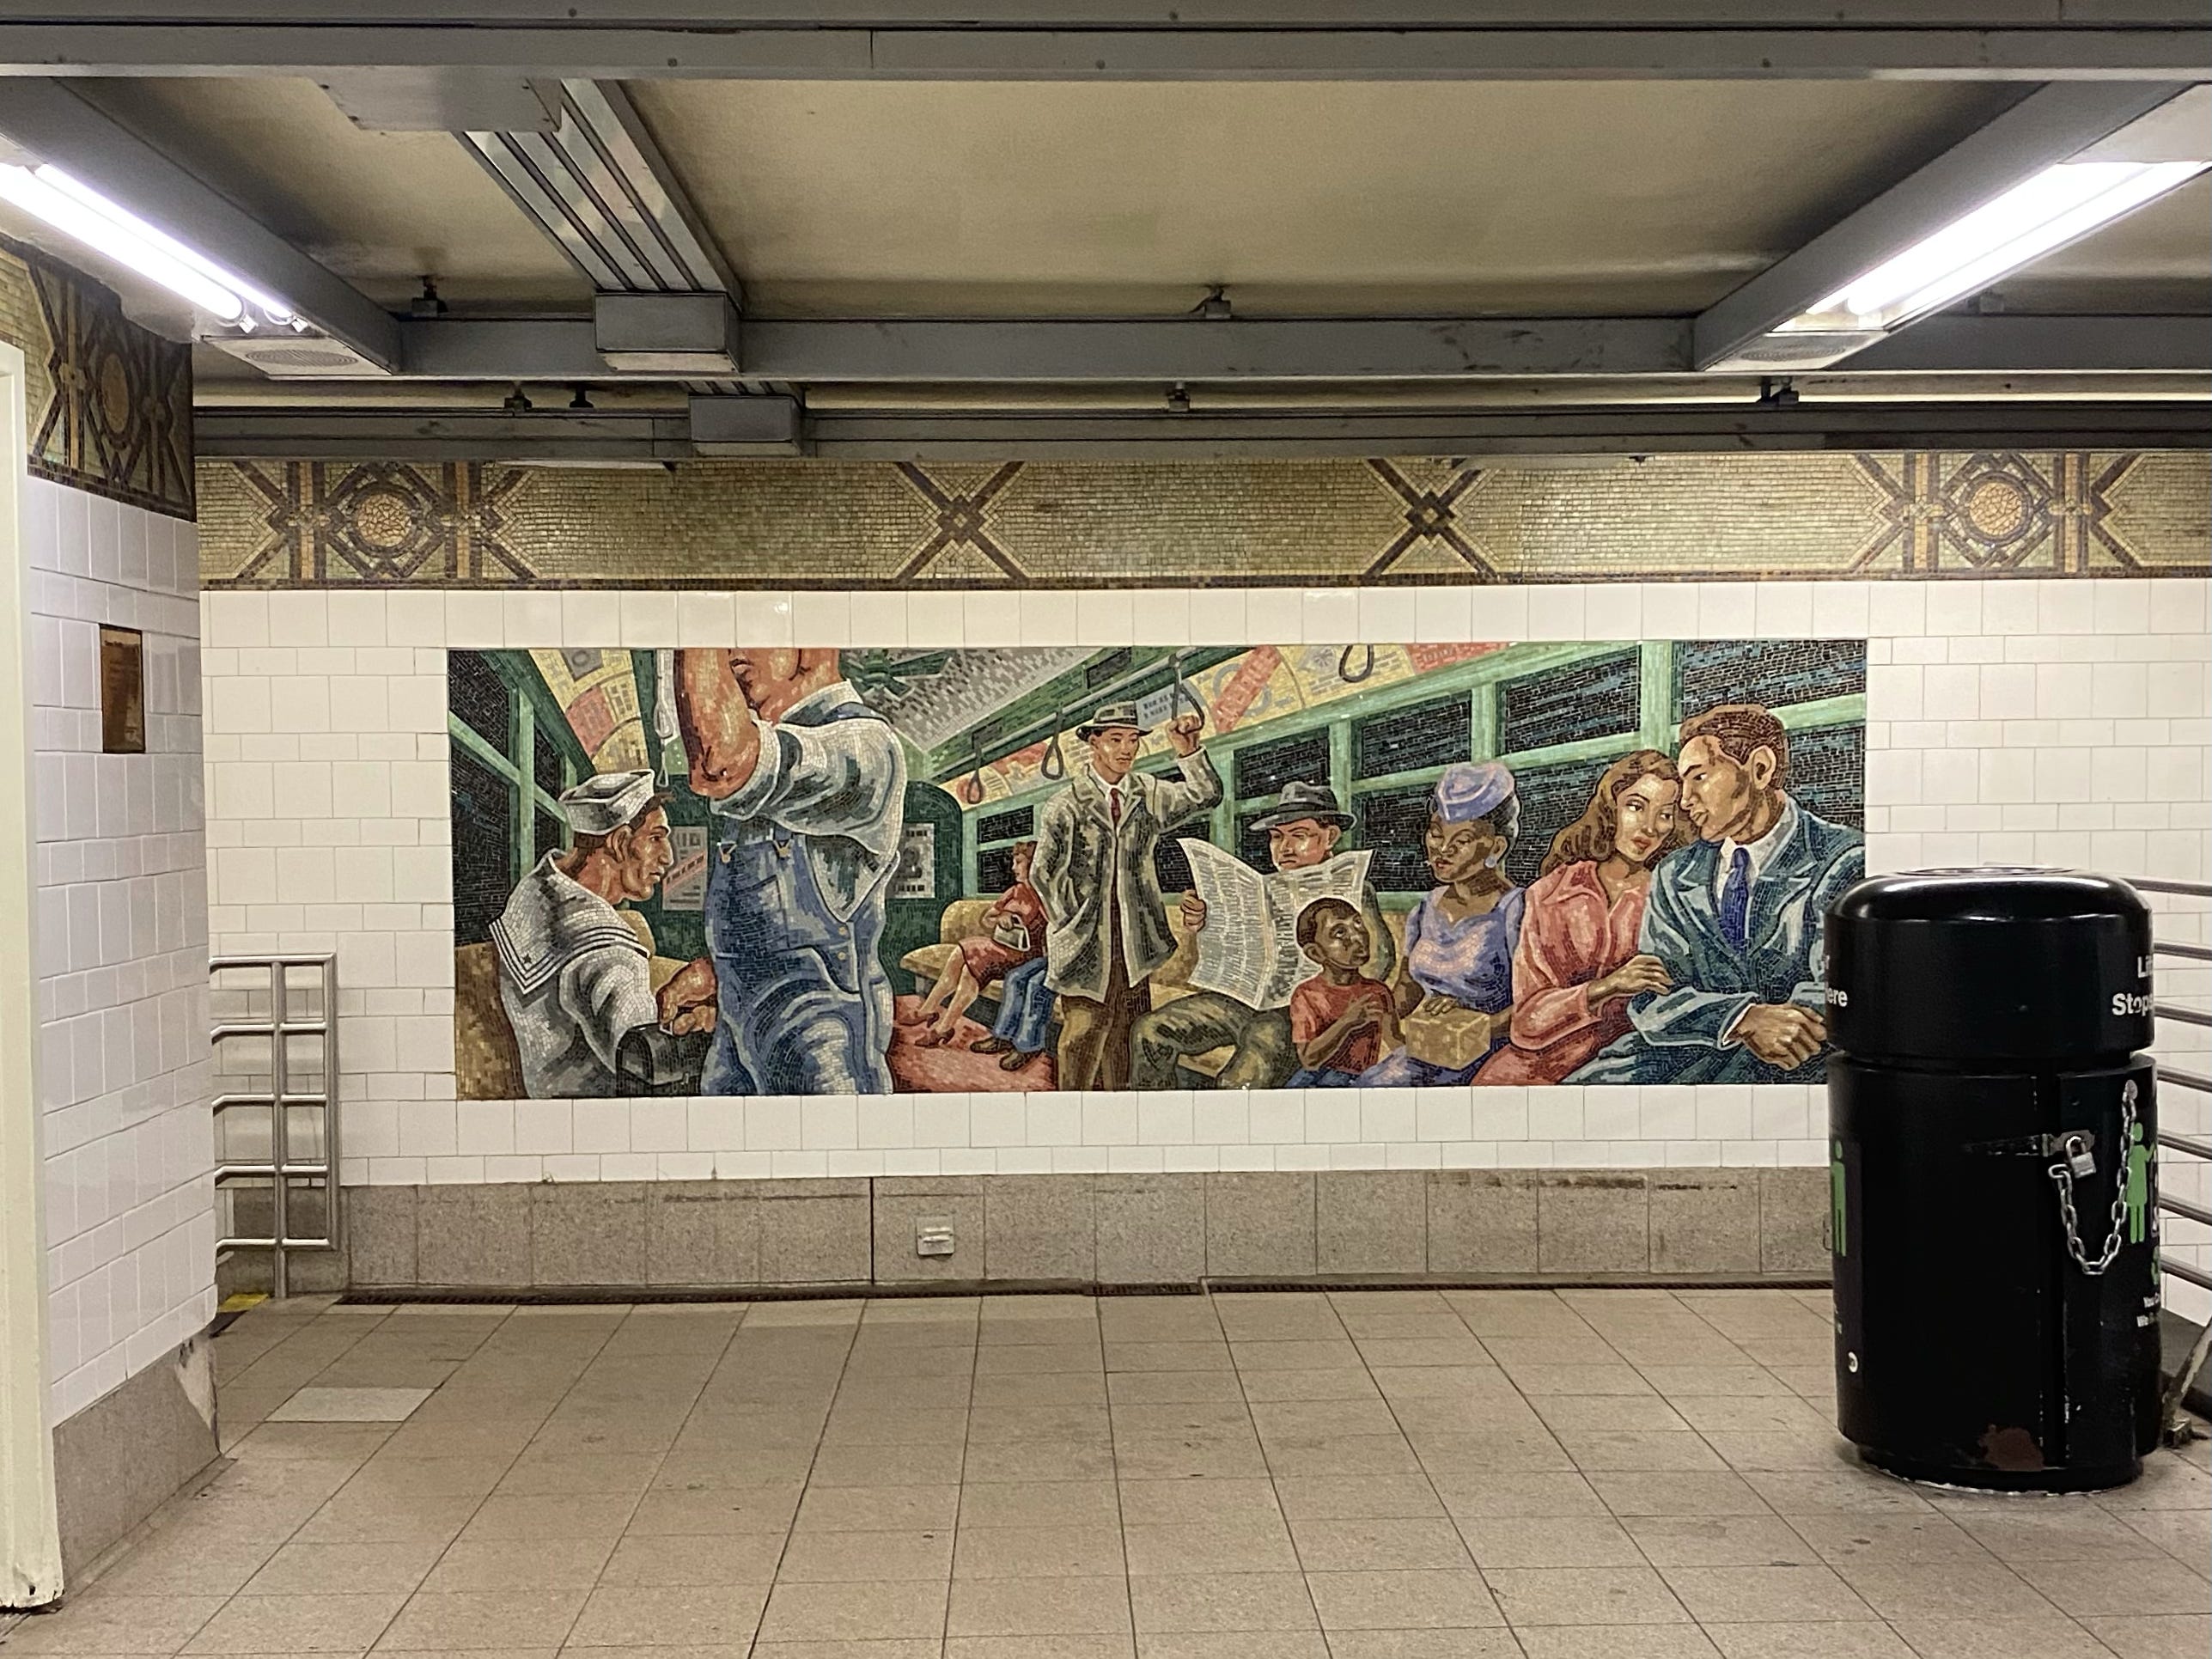 Kunst im öffentlichen Raum in einer U-Bahnstation.